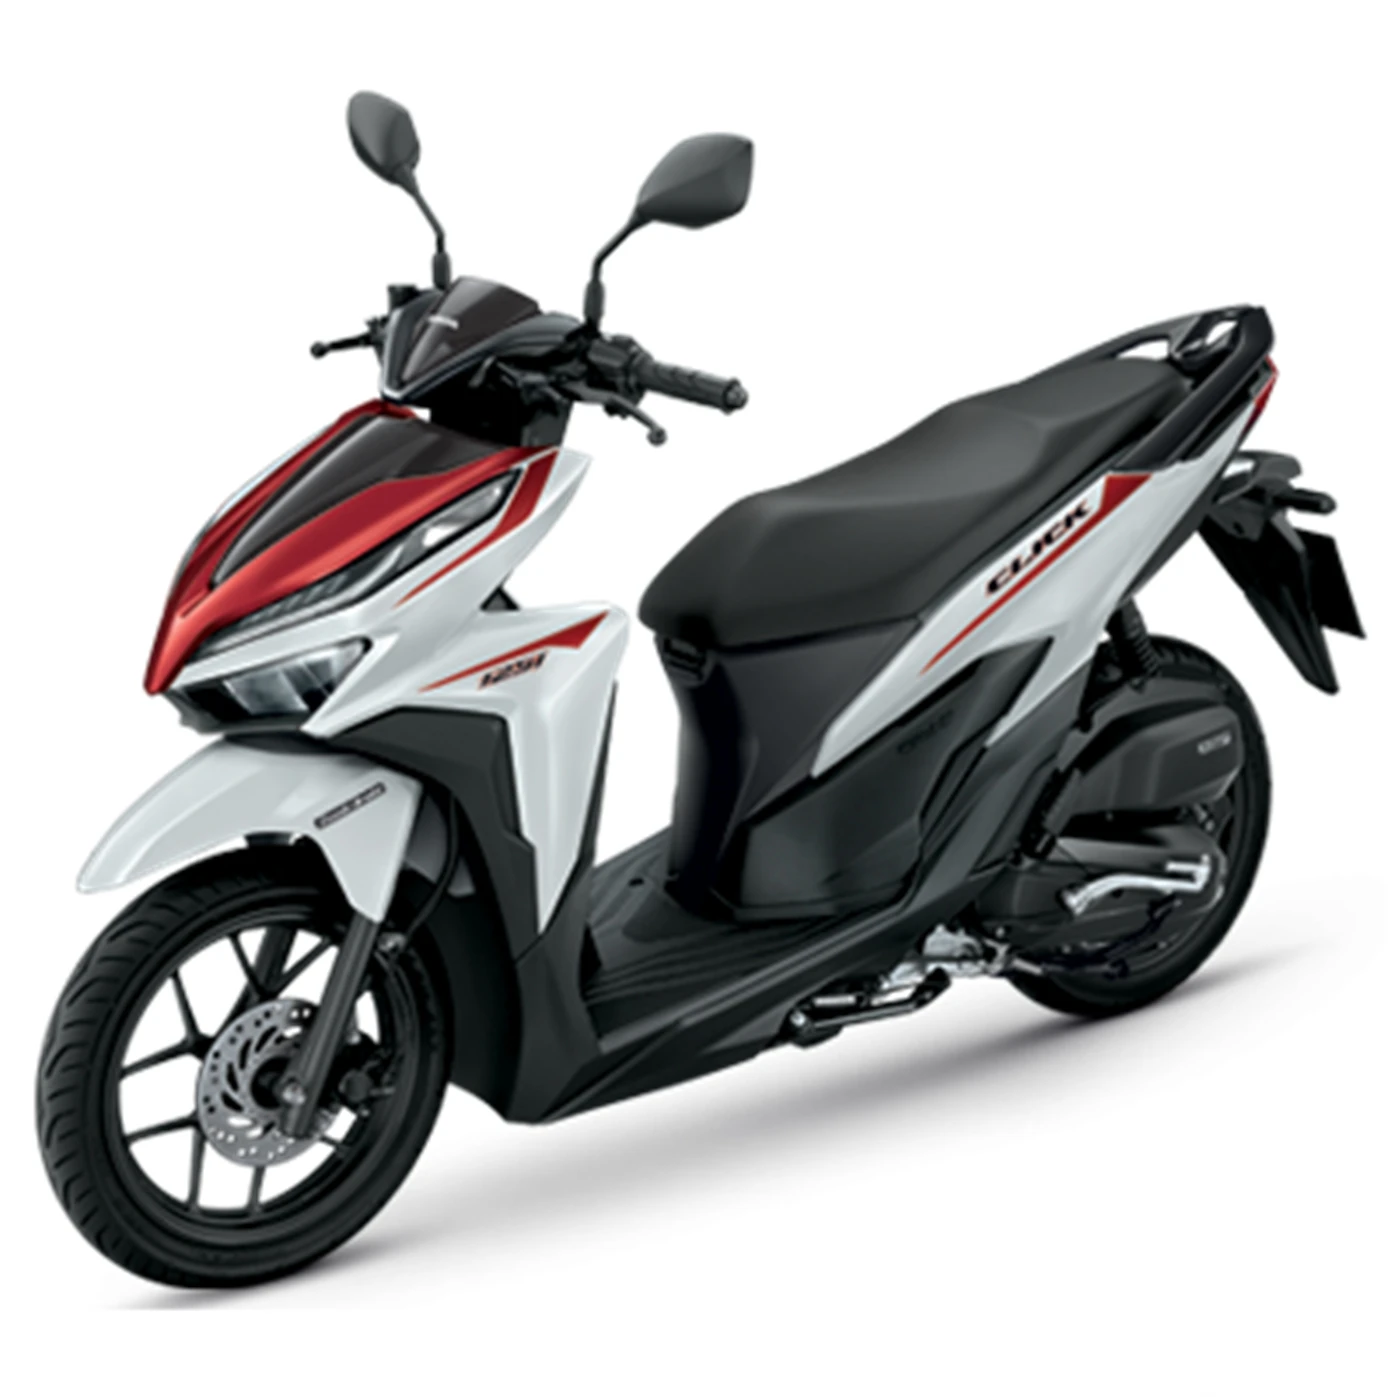 Brand New Thailand Motorcycles Honda Click 125i Scooter - Buy Honda ...